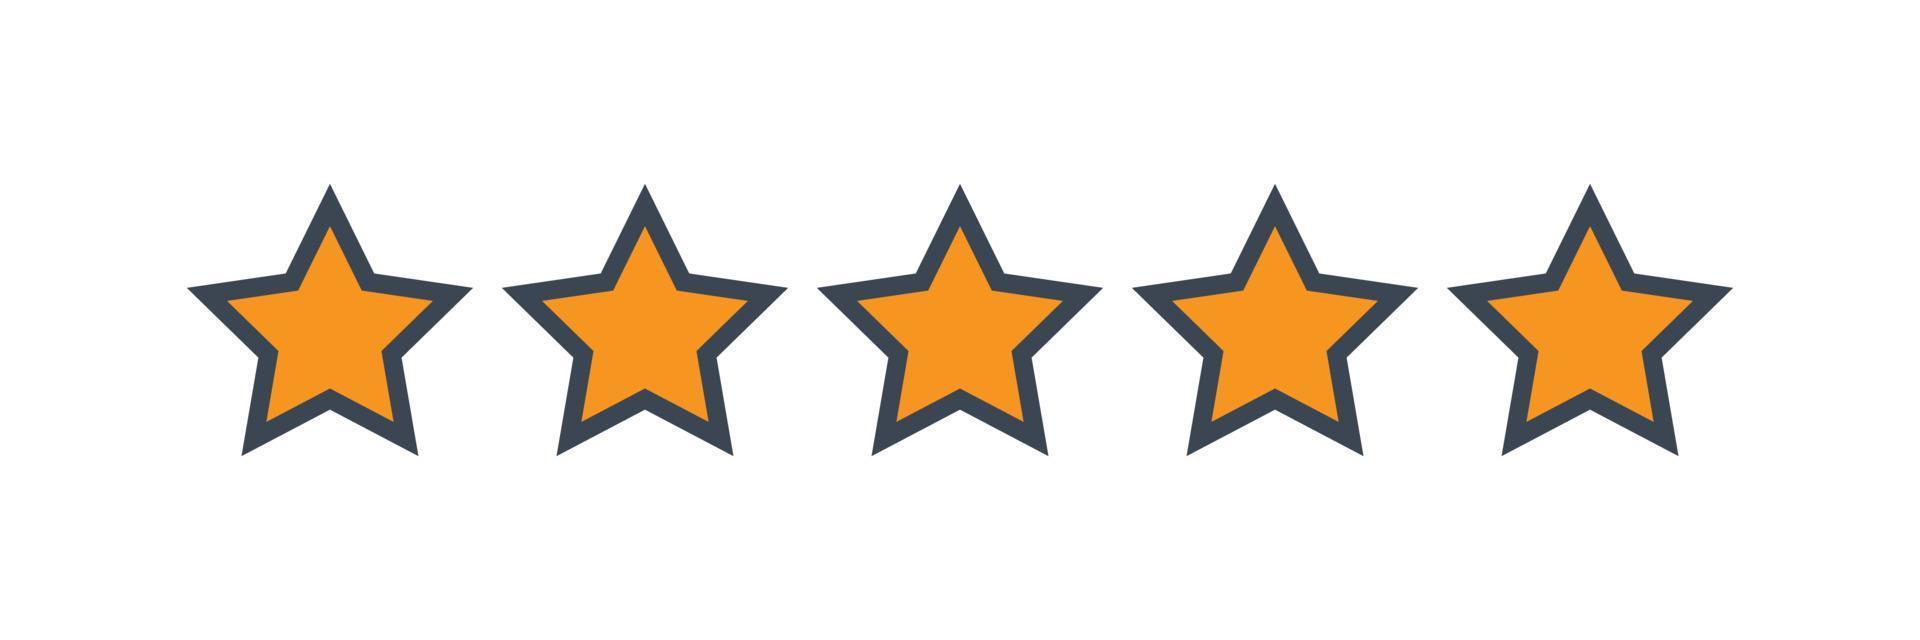 Fünf-Sterne-Kunden-Produktbewertungsbewertung vektor